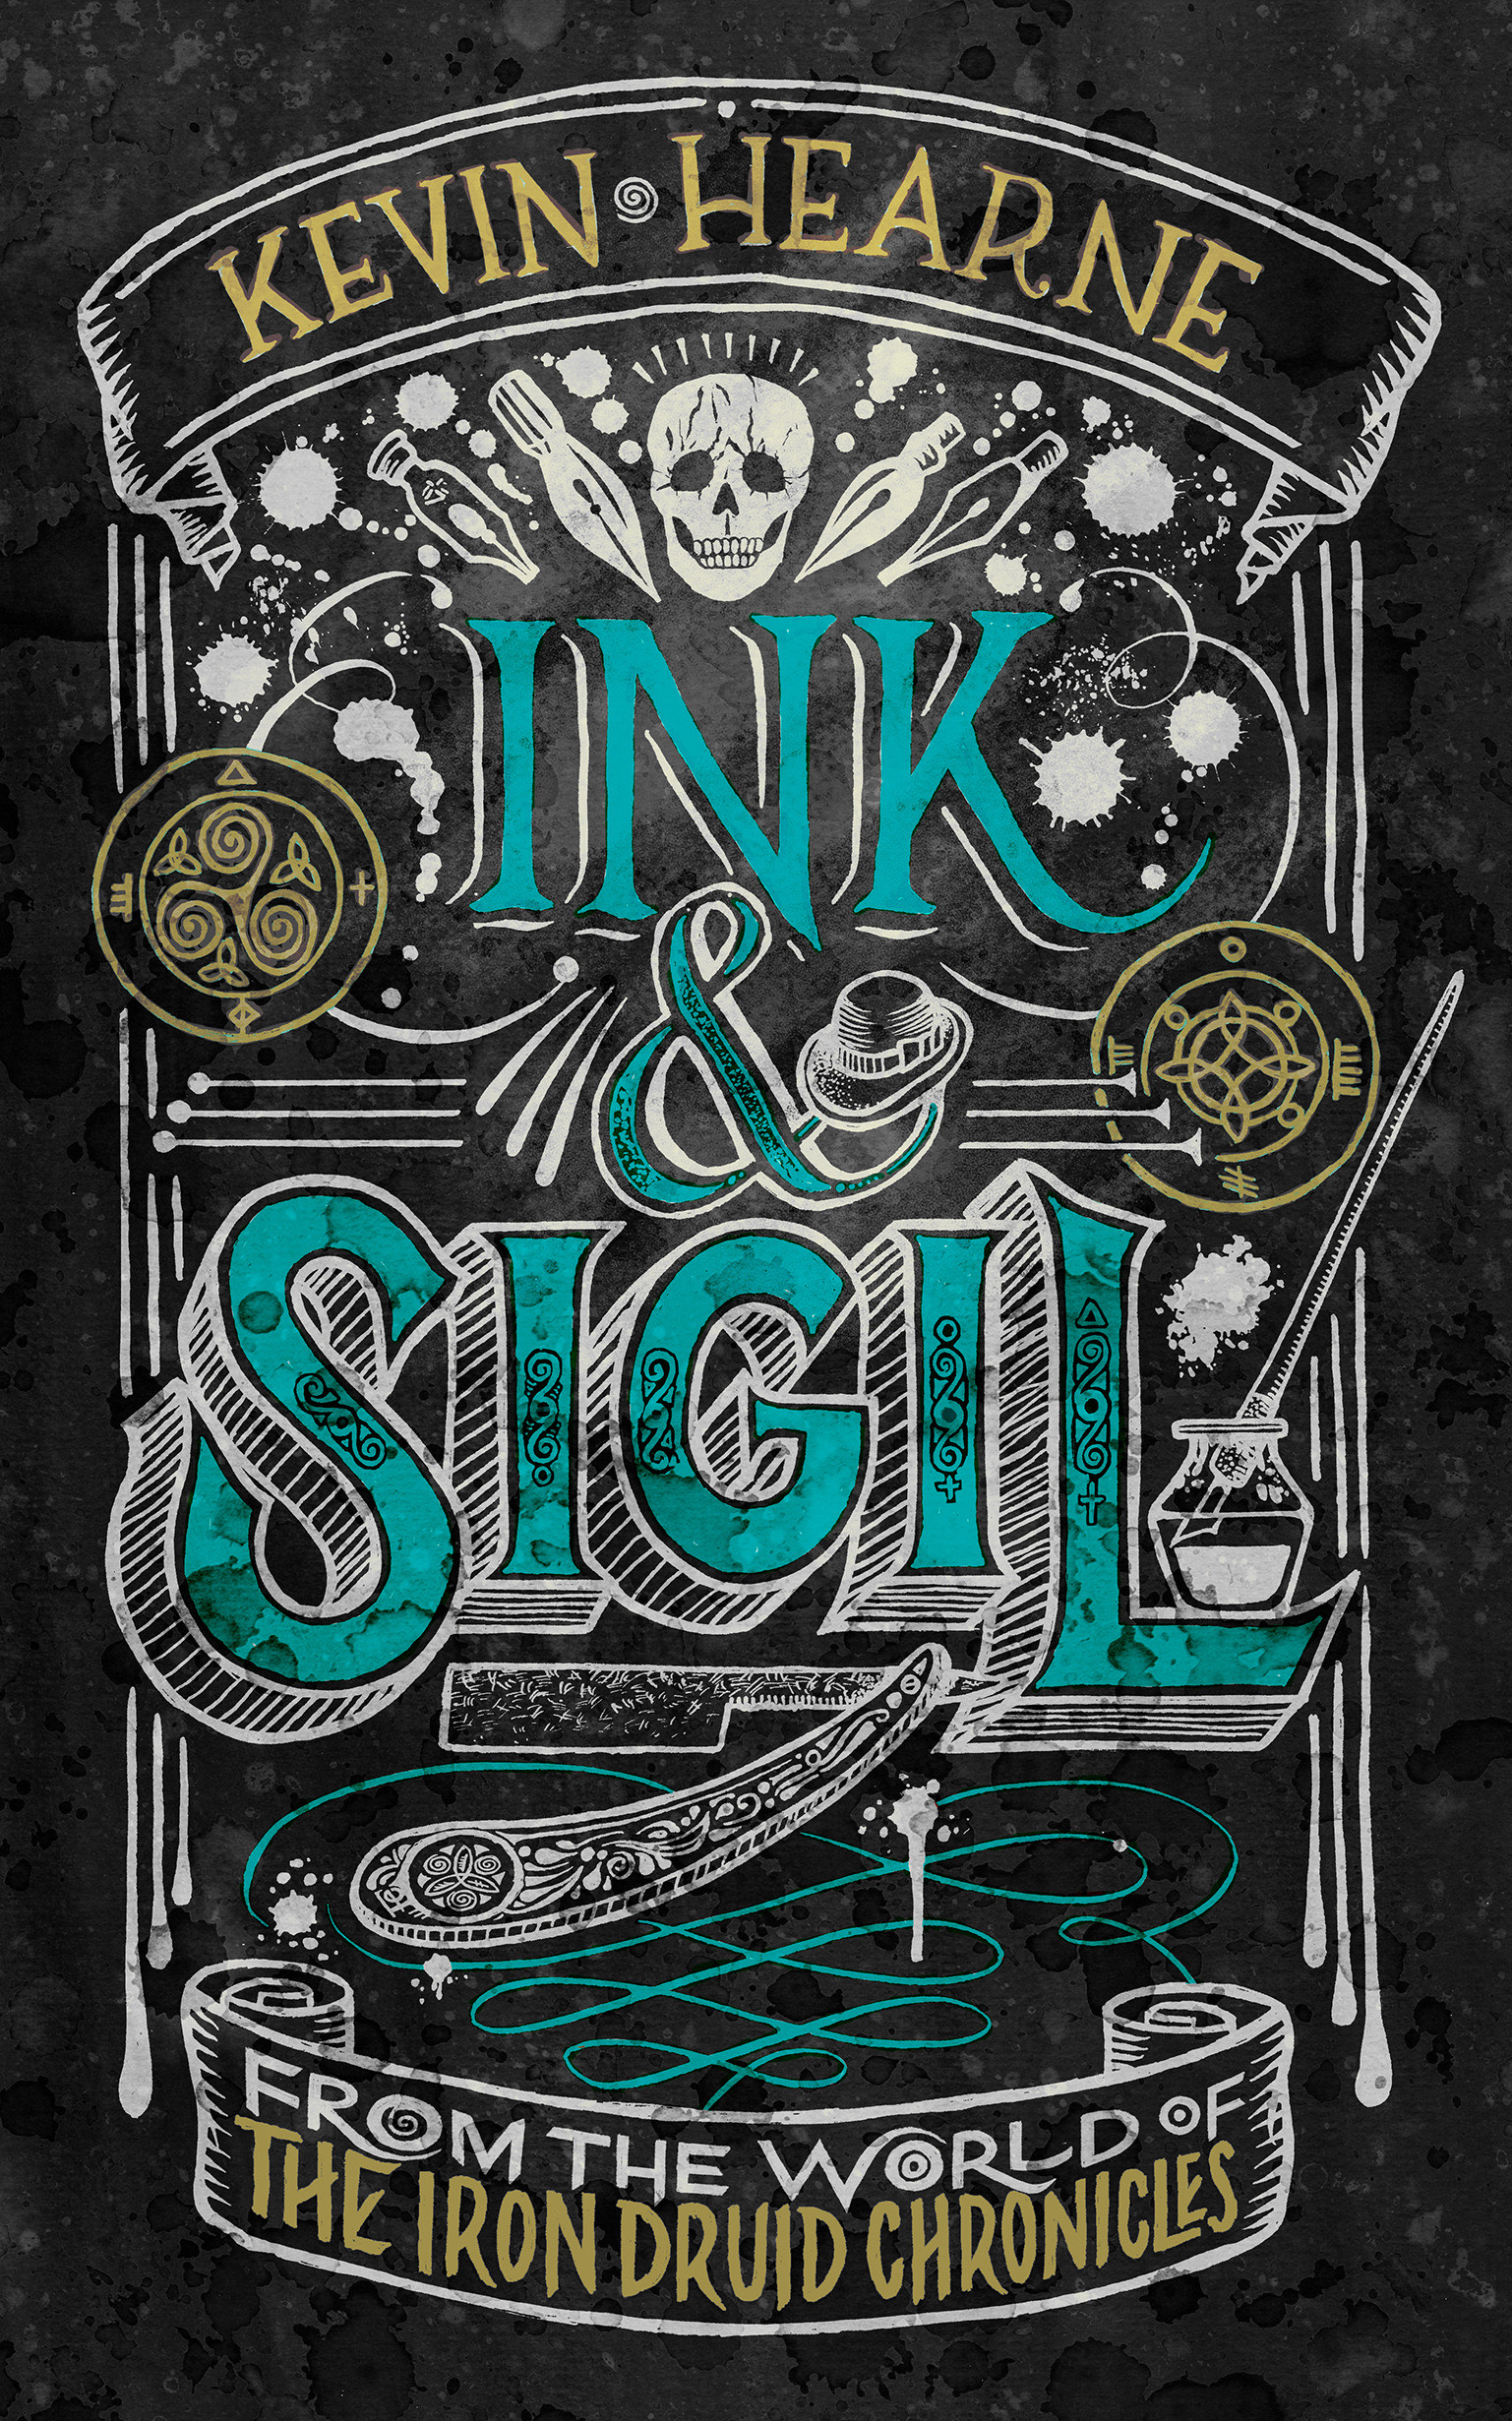 Ink & Sigil